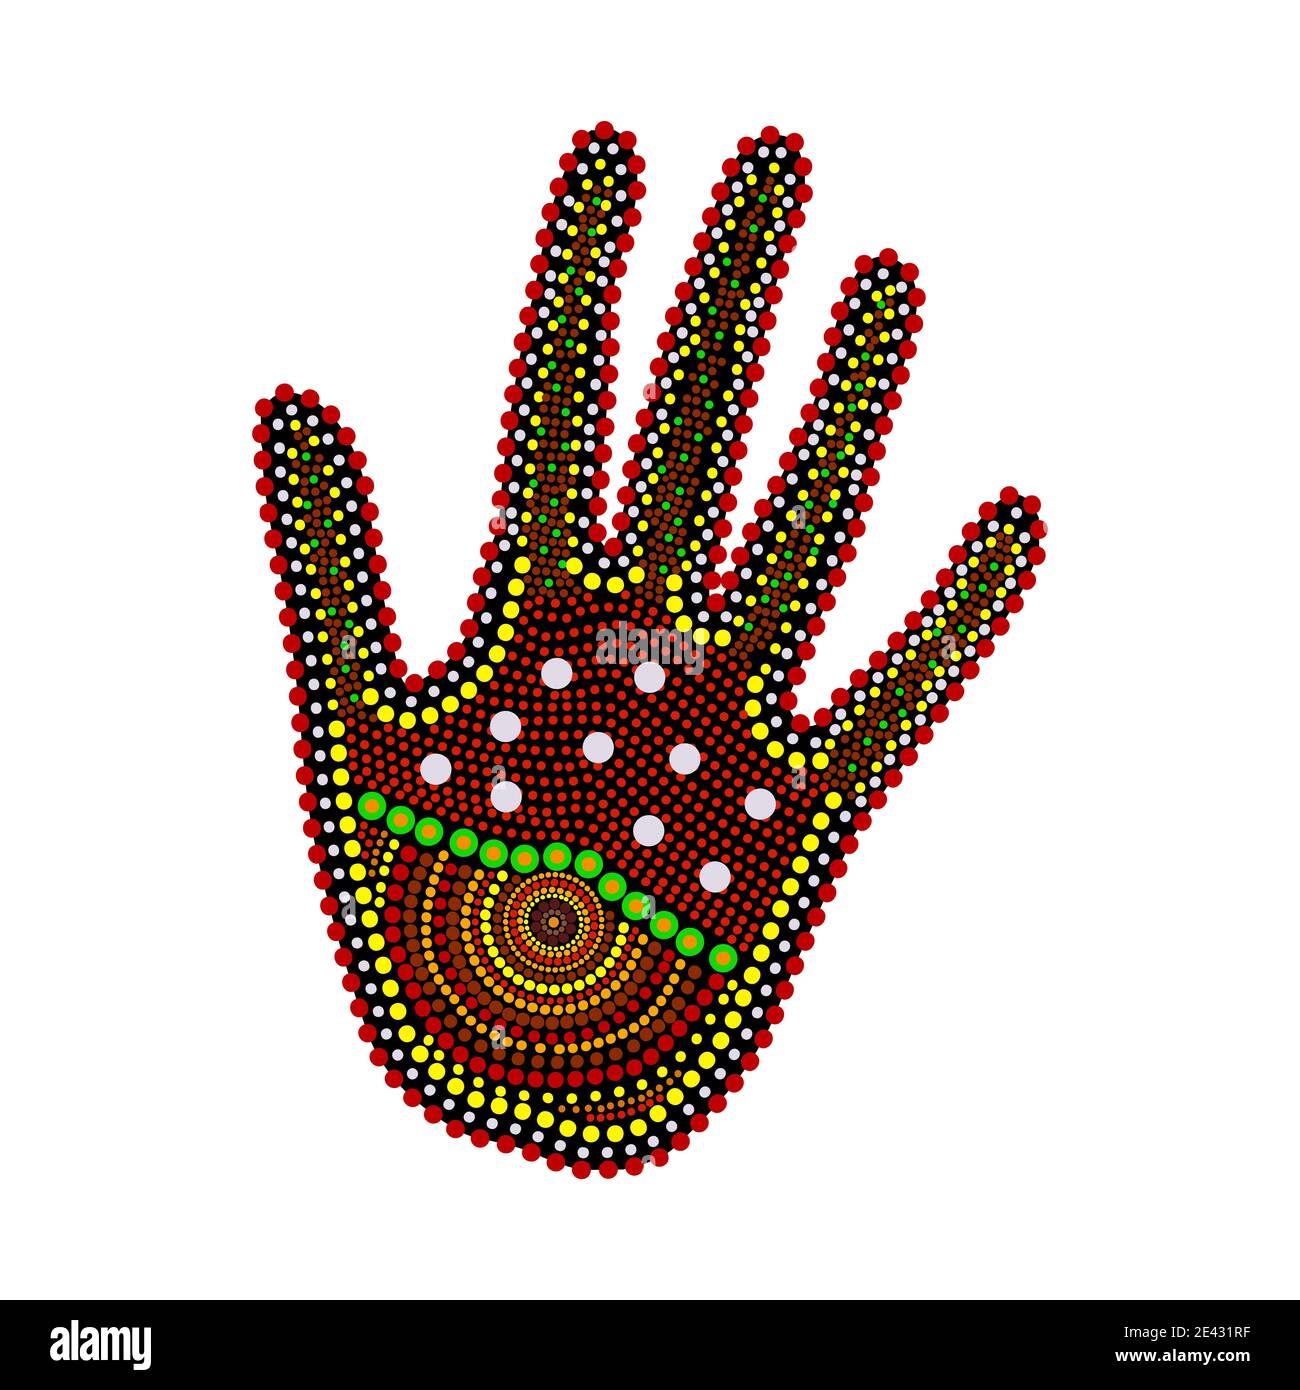 Isolato a mano su sfondo bianco. Australia aborigeno braccio dot pittura. Palma in stile tribale aborigeno. Stile etnico decorativo. Illustrazione vettoriale Illustrazione Vettoriale